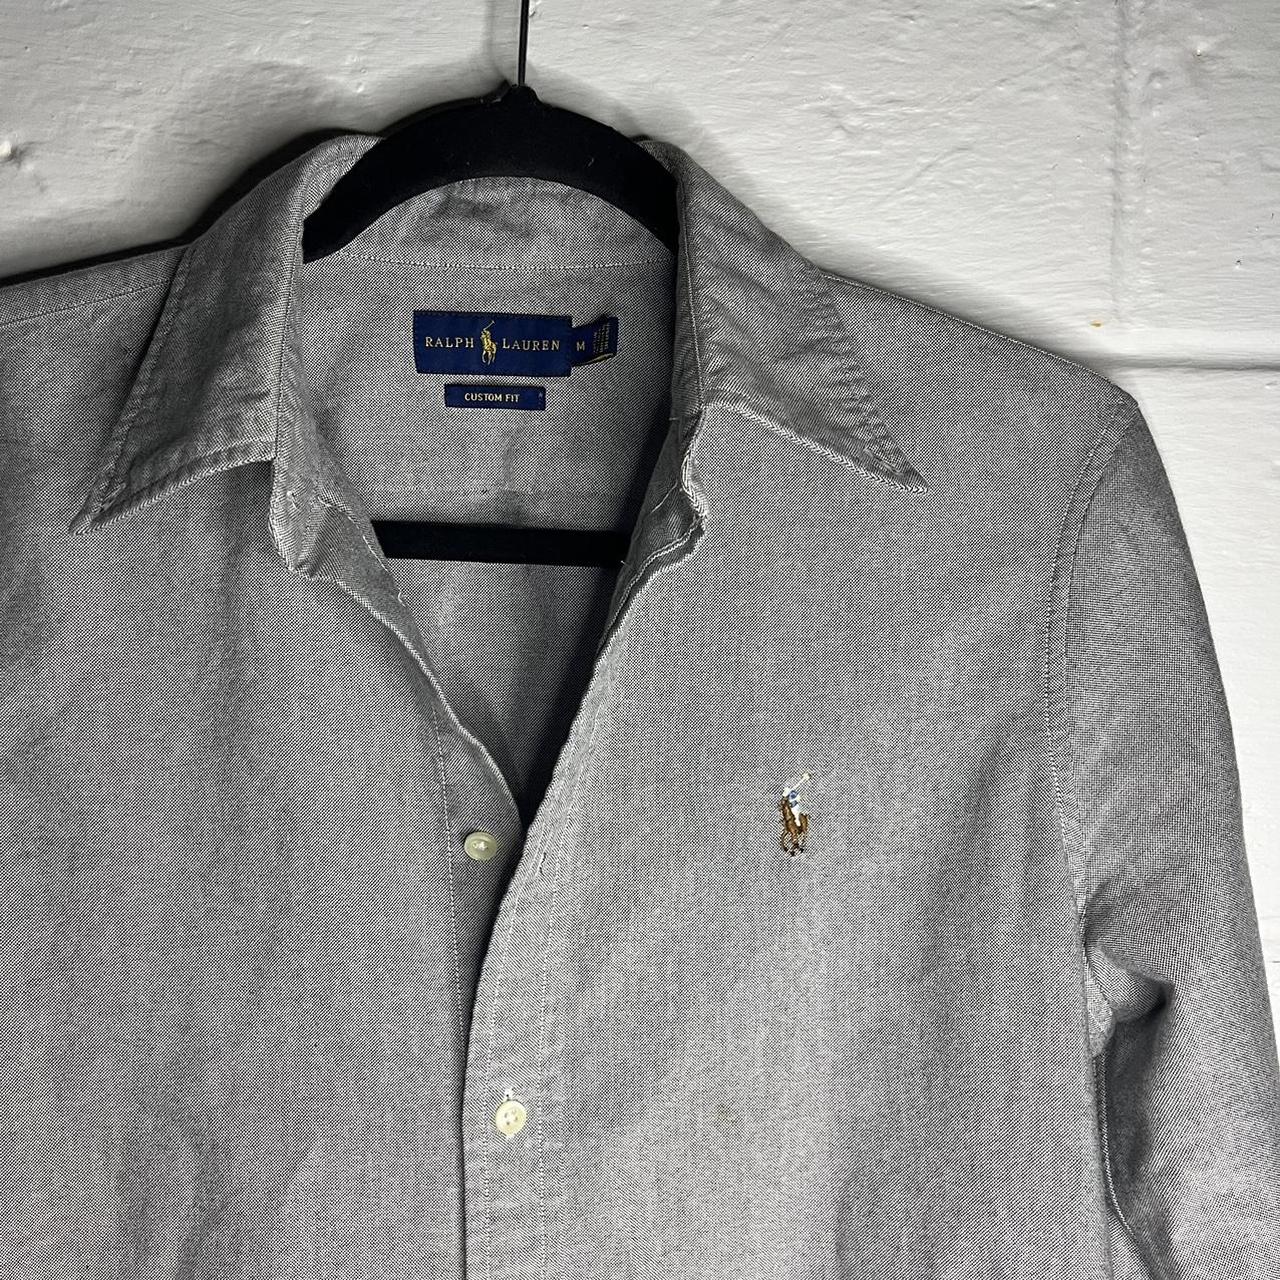 Ralph Lauren | Colored Logo | Blue Tag 100% Cotton... - Depop